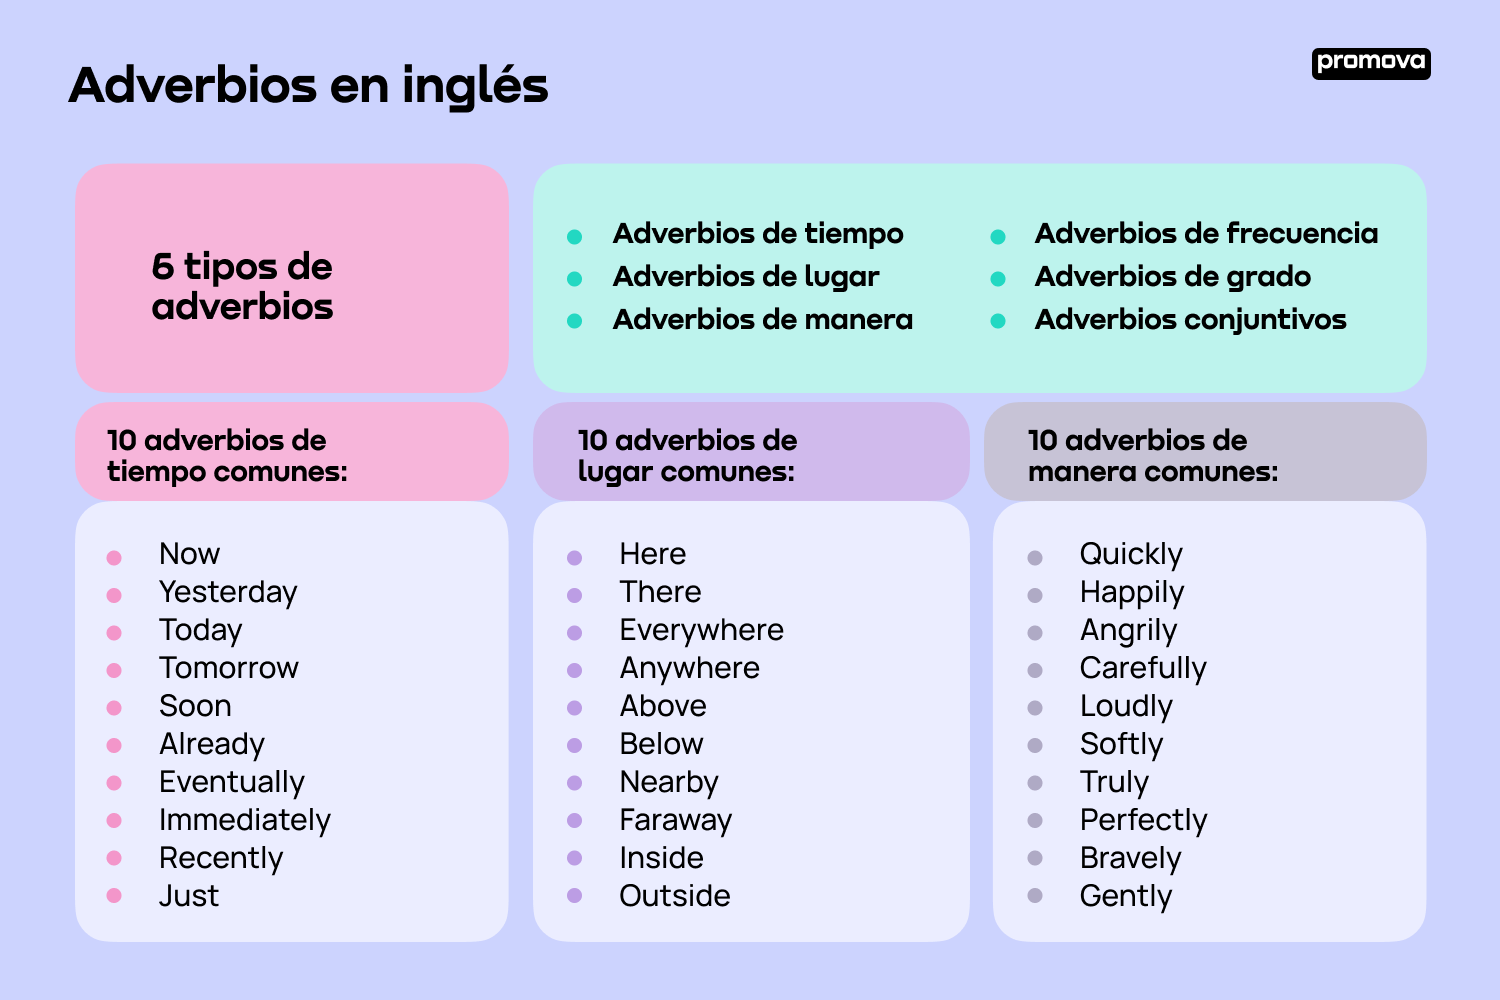 Adverbios en inglés: Explorando su función y variedad en el idioma